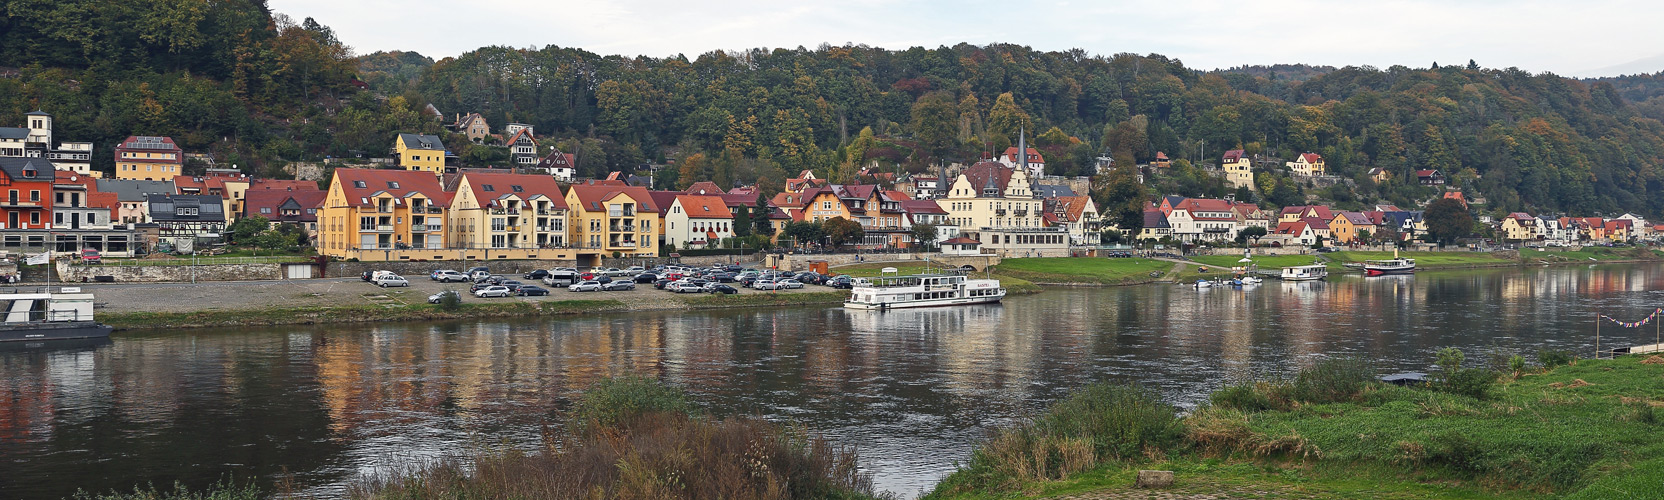 Blick vom linkselbischen Pötzscha zu einem malerischen Ort an der Elbe...